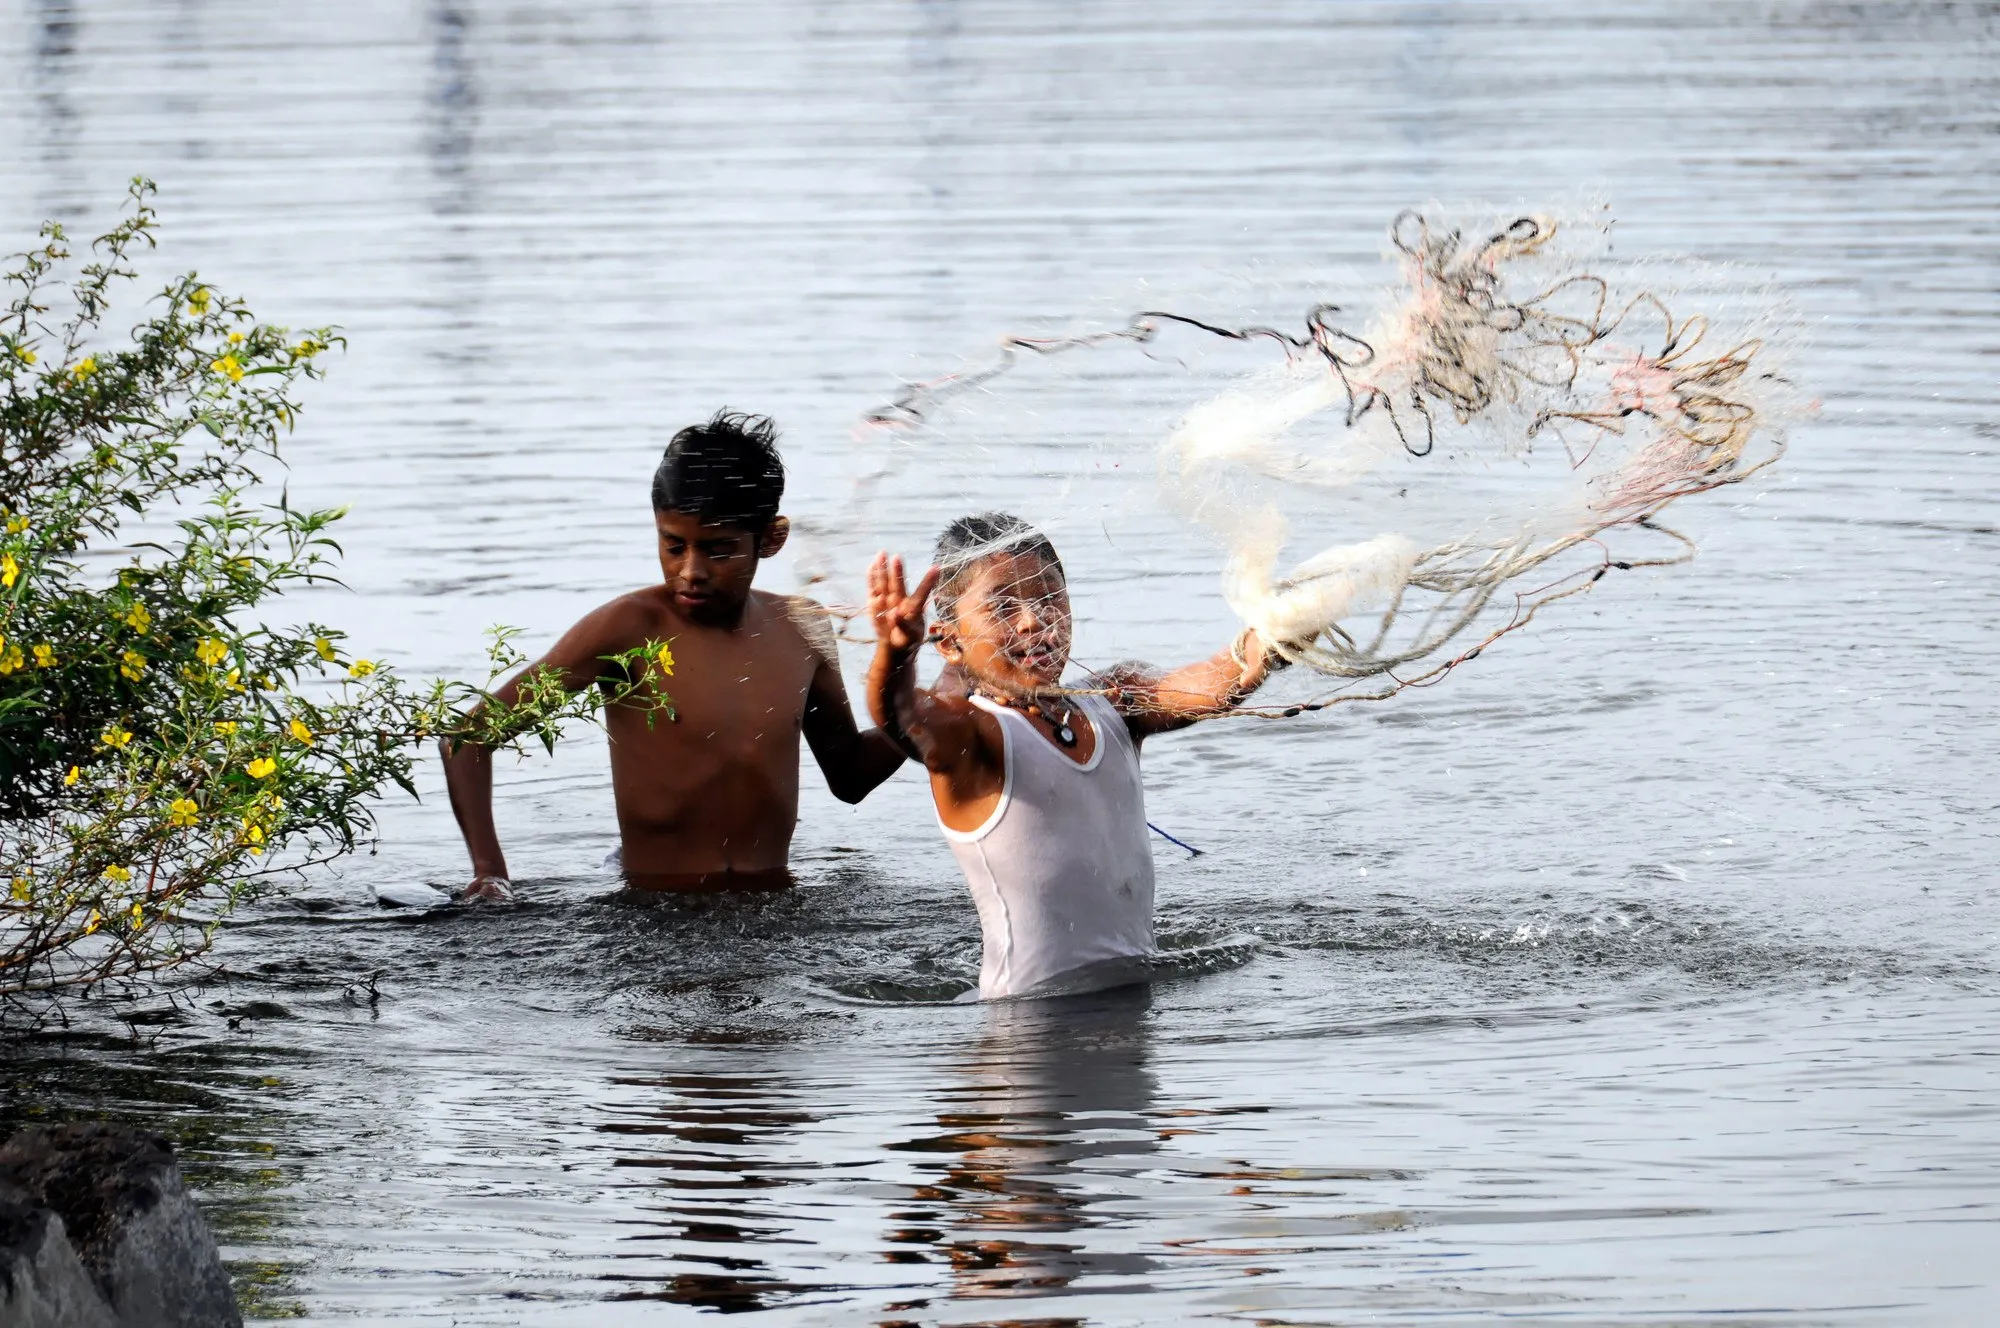 Niños pescando en el lago de Nicaragua, 2009.